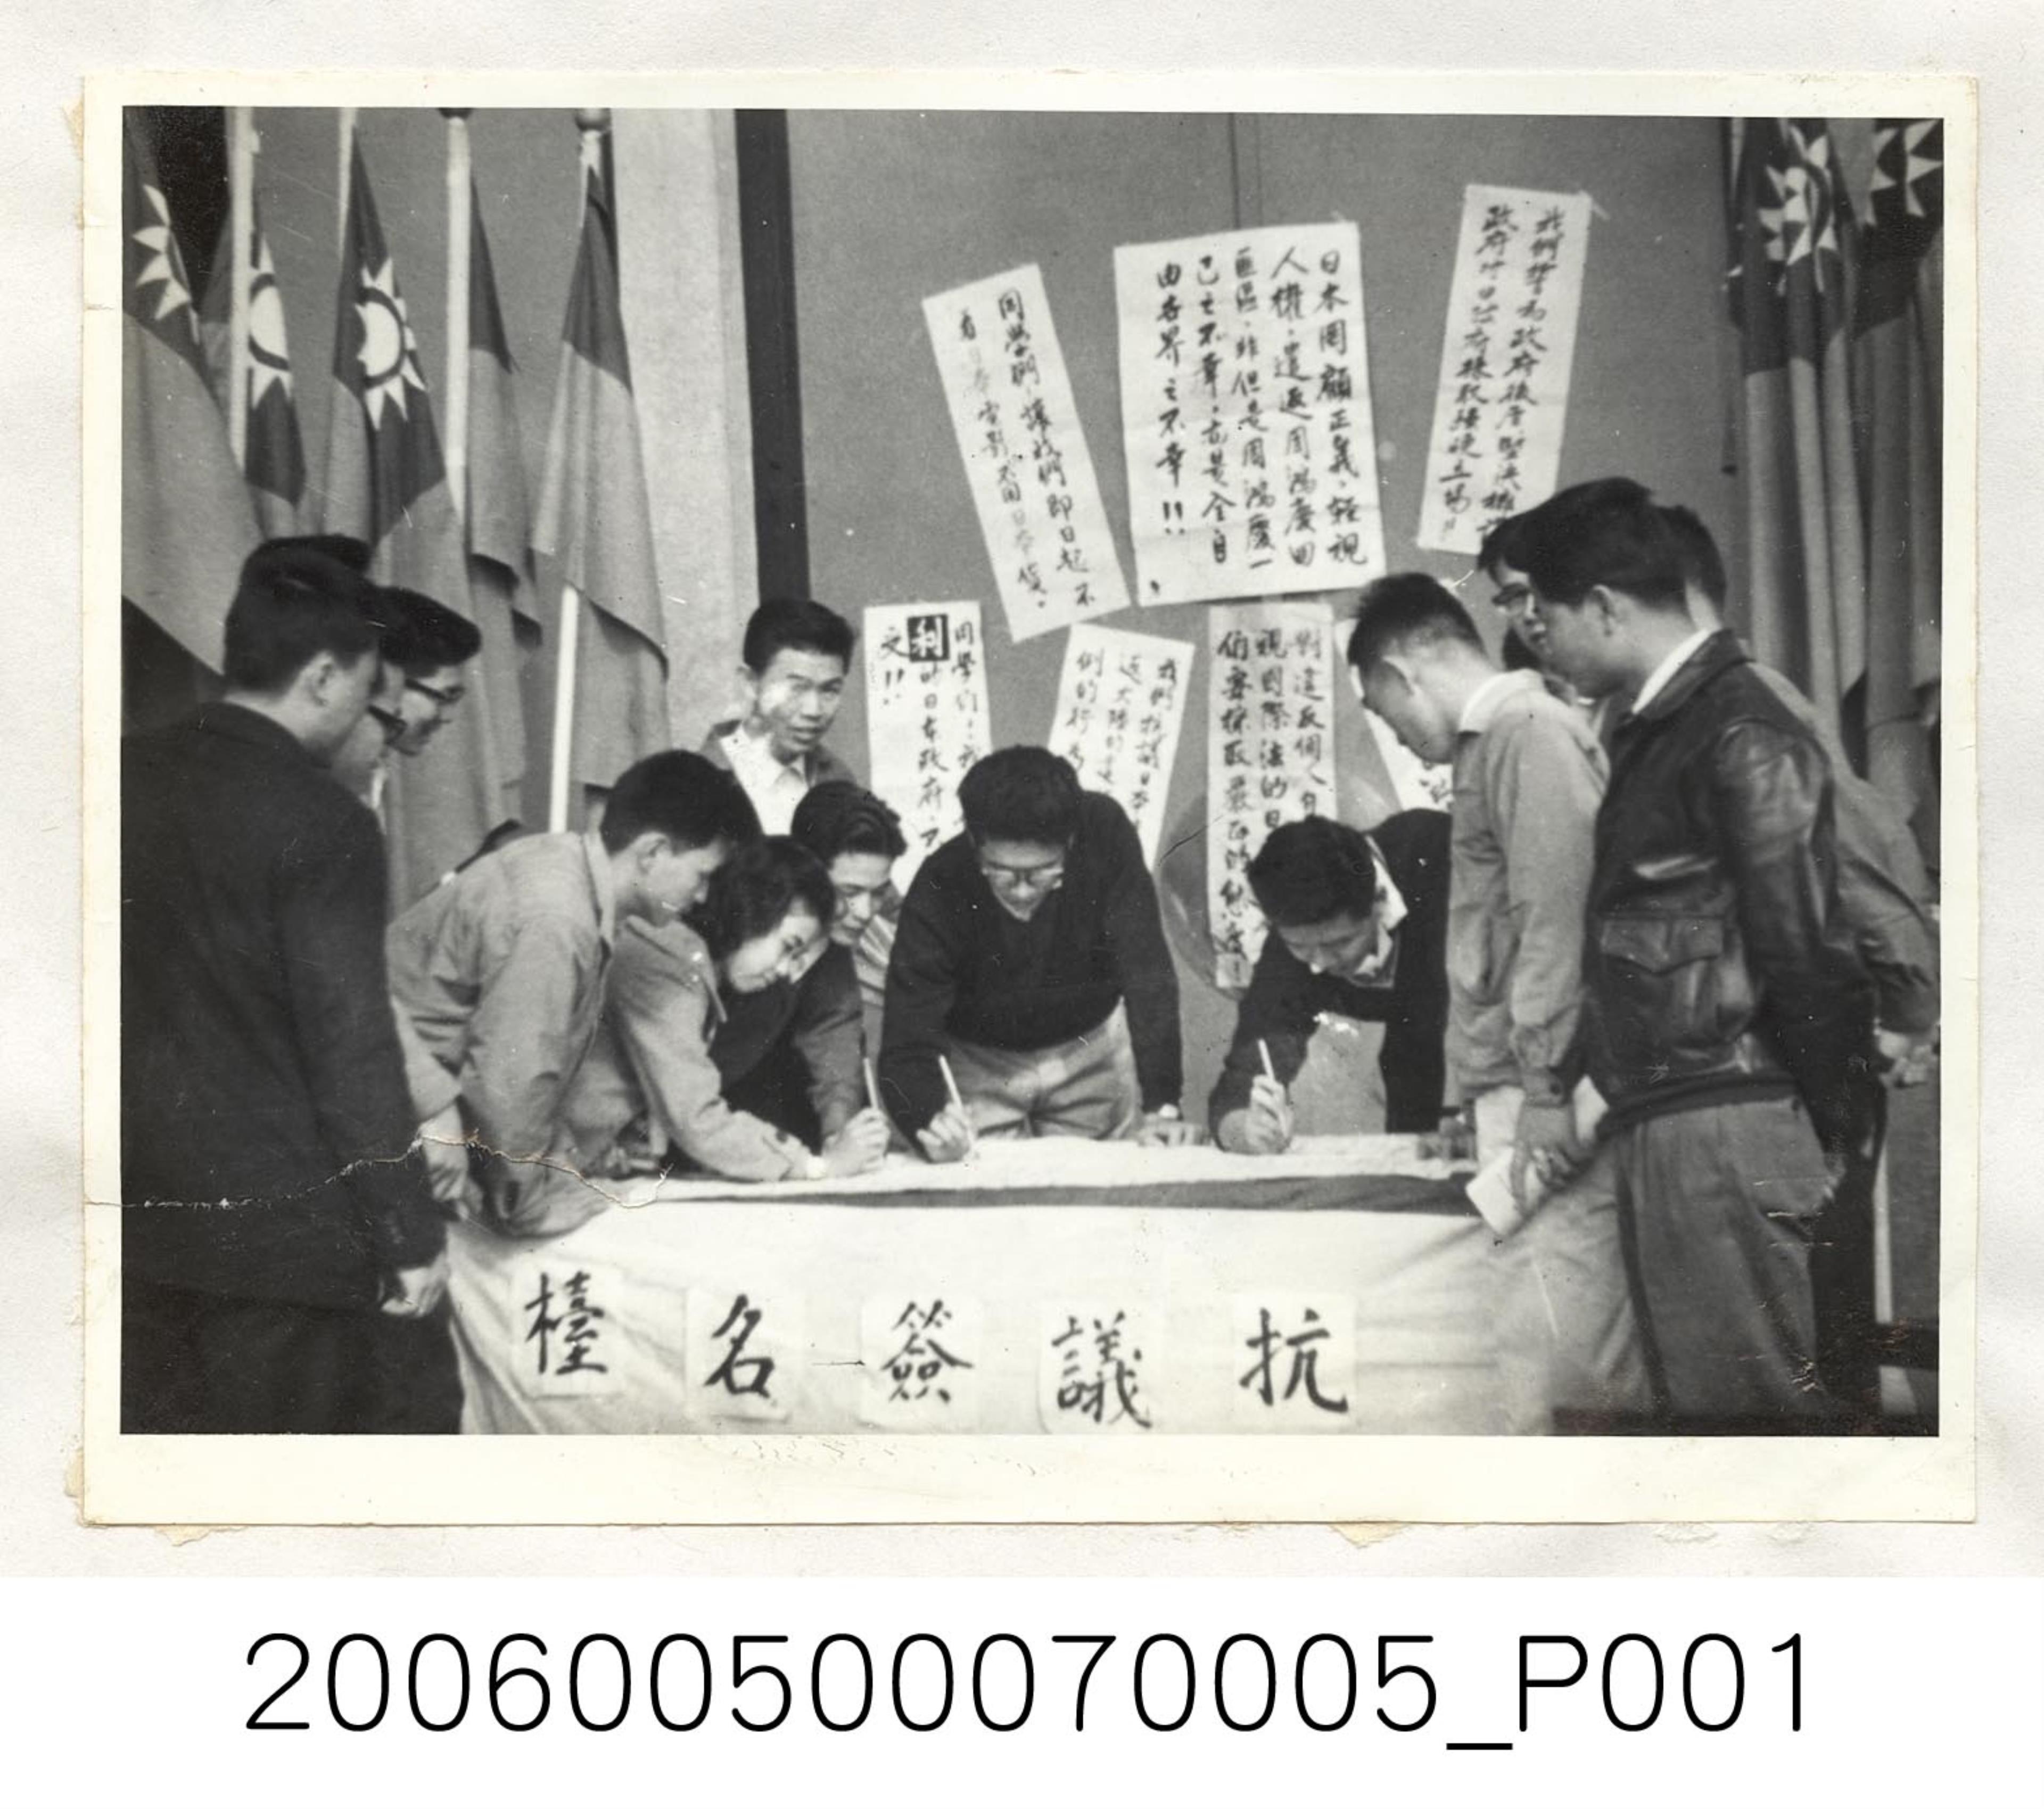 《華僑通訊社新聞照片集》〈臺灣大學學生熱烈響應了一項對於日本媚匪的簽名抗議運動〉 (共1張)